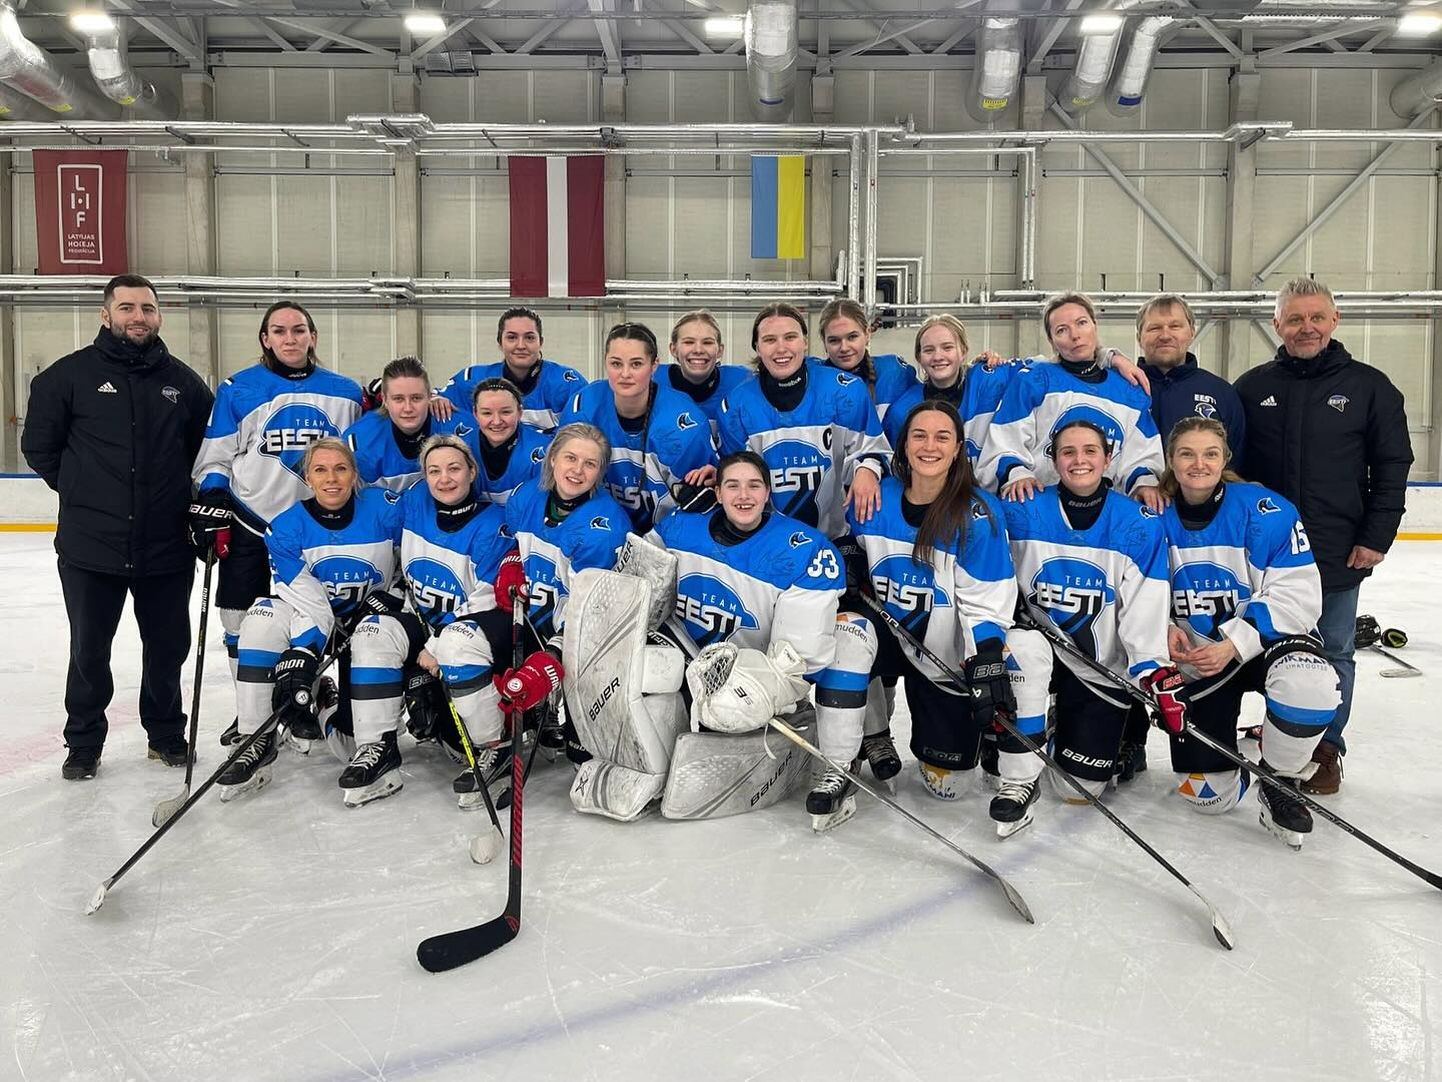 Женская сборная Эстонии по хоккею проведет в Кохтла-Ярве четыре матча, первый из которых - против Боснии и Герцеговины - состоится в воскресенье вечером.